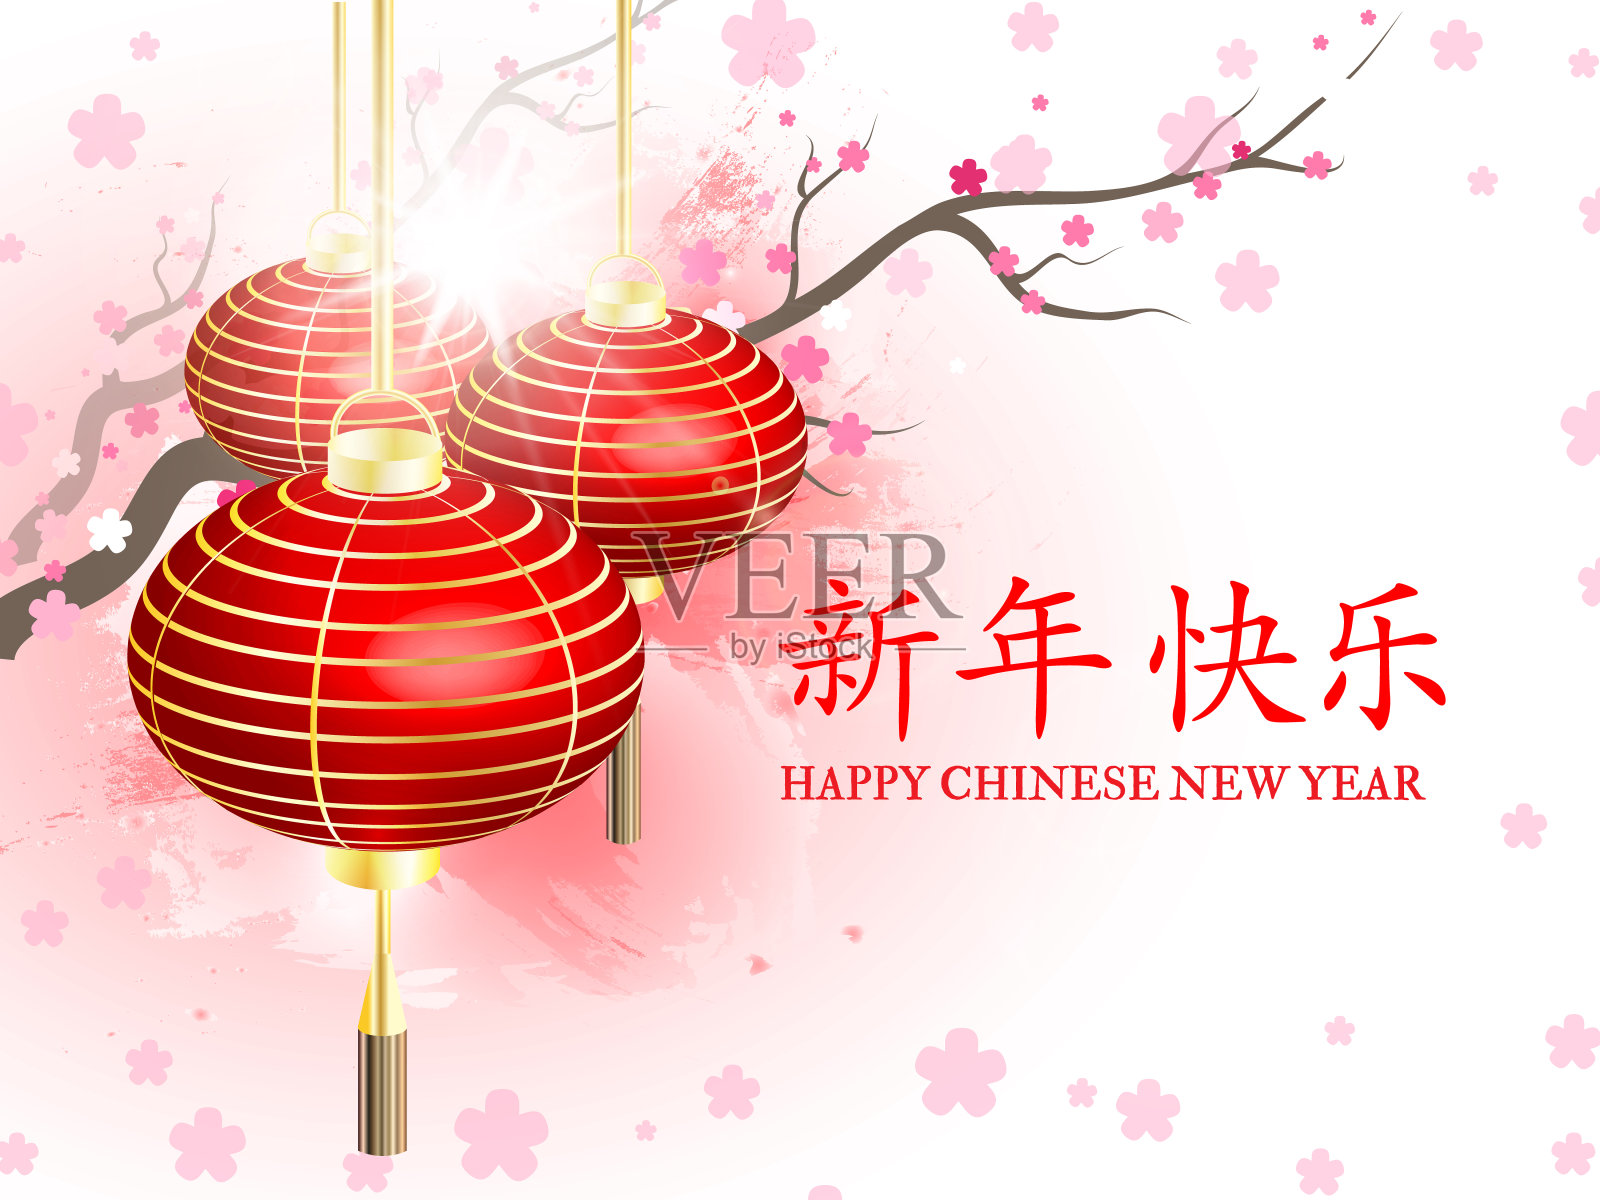 中国新年。新年快乐。明信片中国新年灯笼插画图片素材